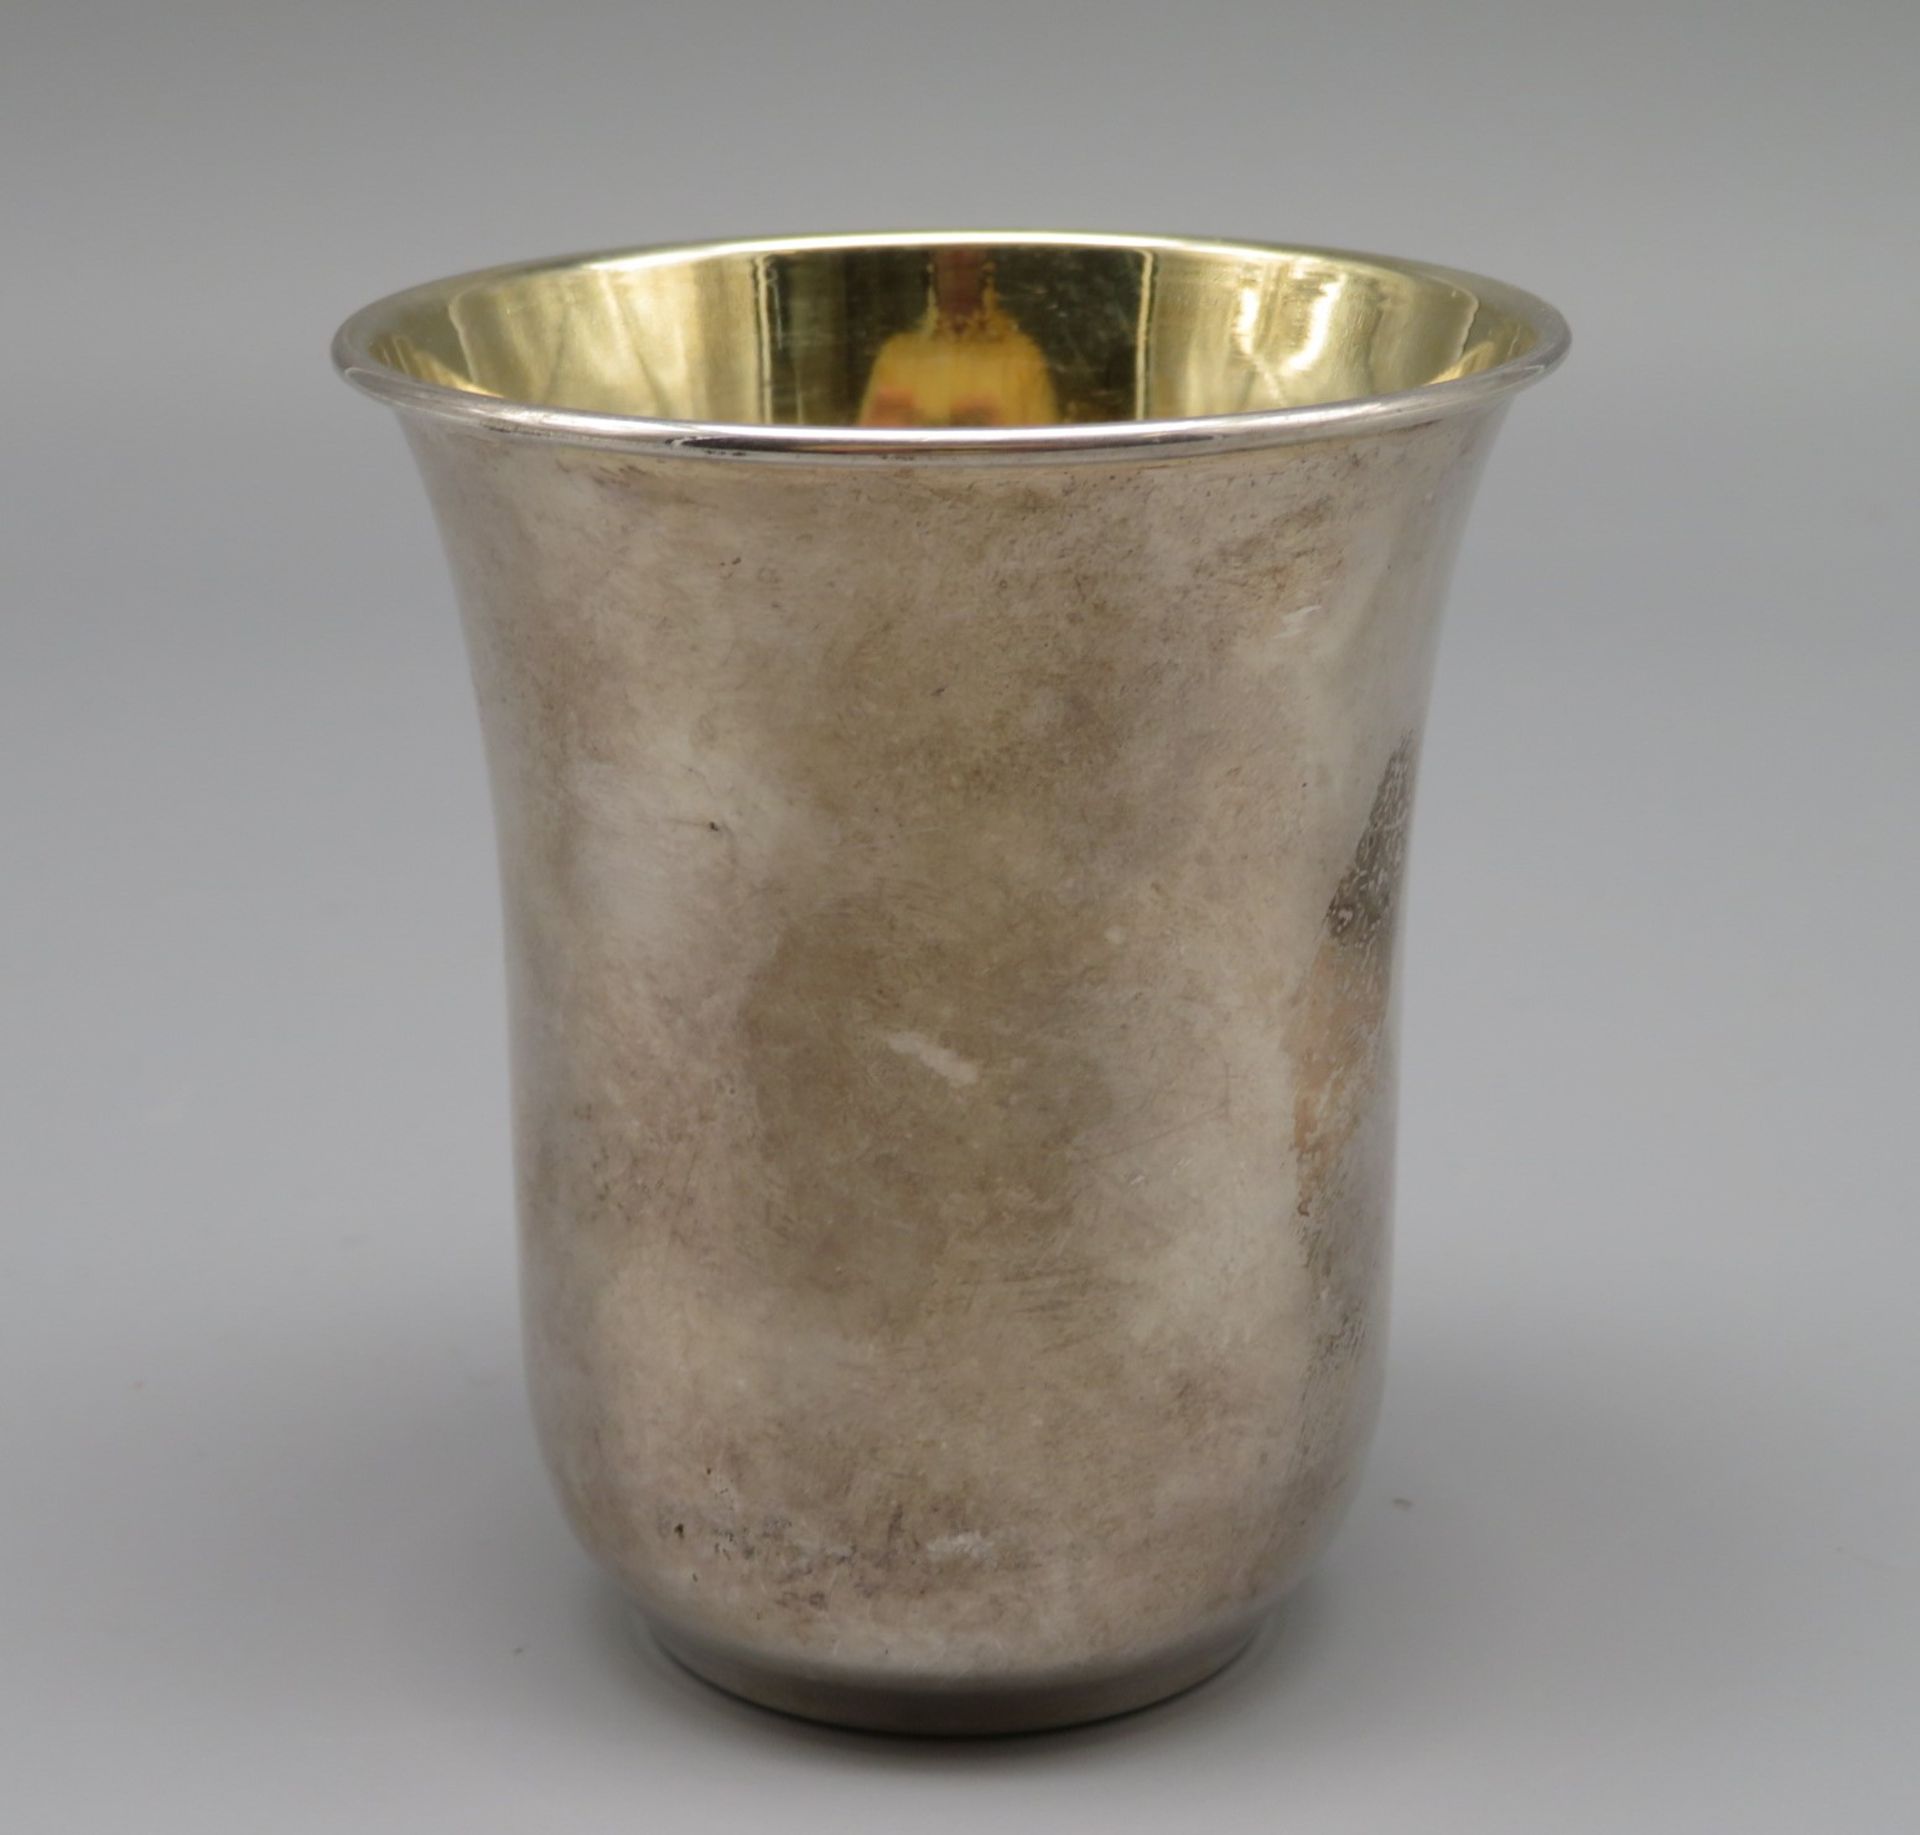 Becher, Silber 925/000, punziert, 46 g, Innenvergoldung, h 8 cm, d 7 cm.